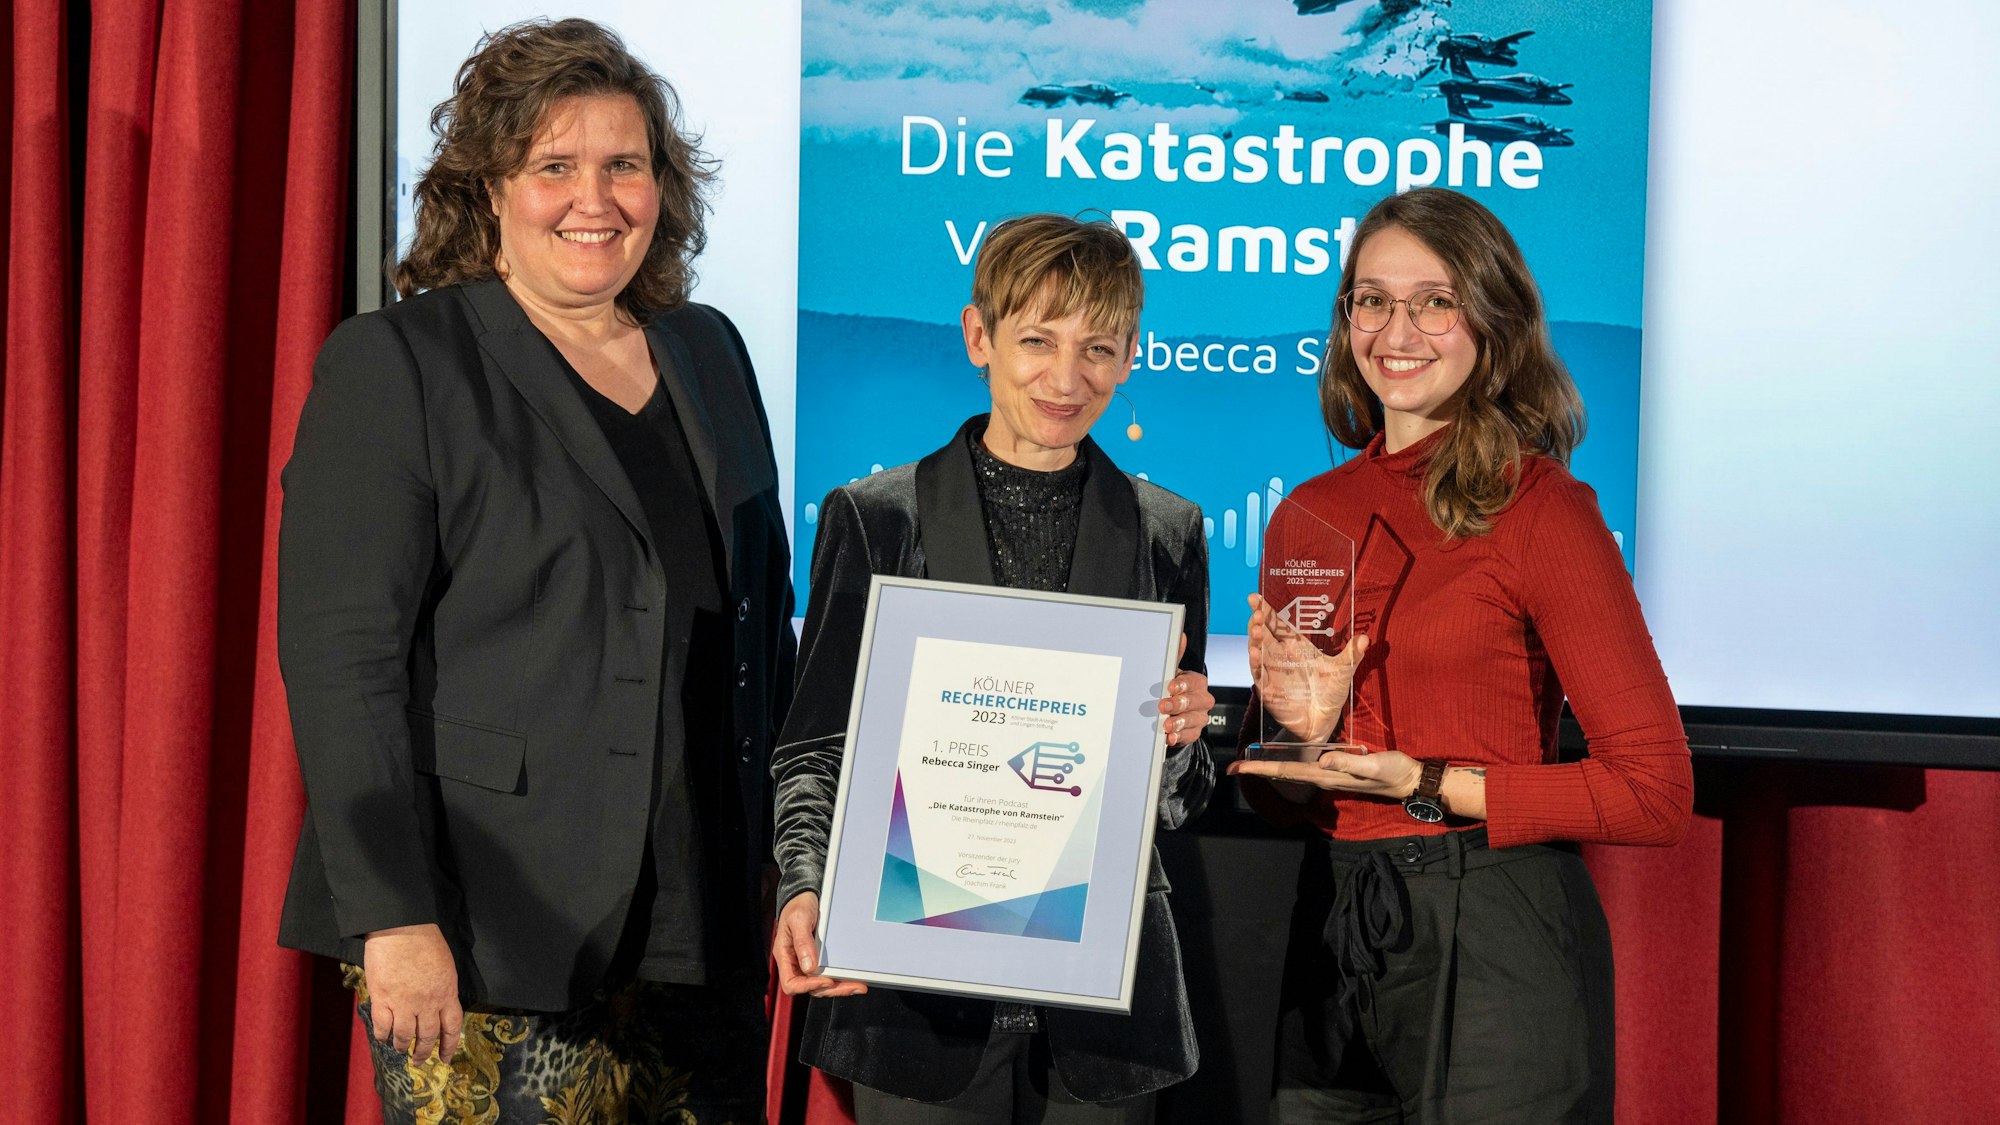 Annette Binninger (Chefredaktion „Sächsische Zeitung“, links) übergab die Preis-Statuette für den 1. Preis an Rebecca Singer (rechts). In der Mitte Moderatorin Katharina Schmalenberg mit Singers Urkunde.